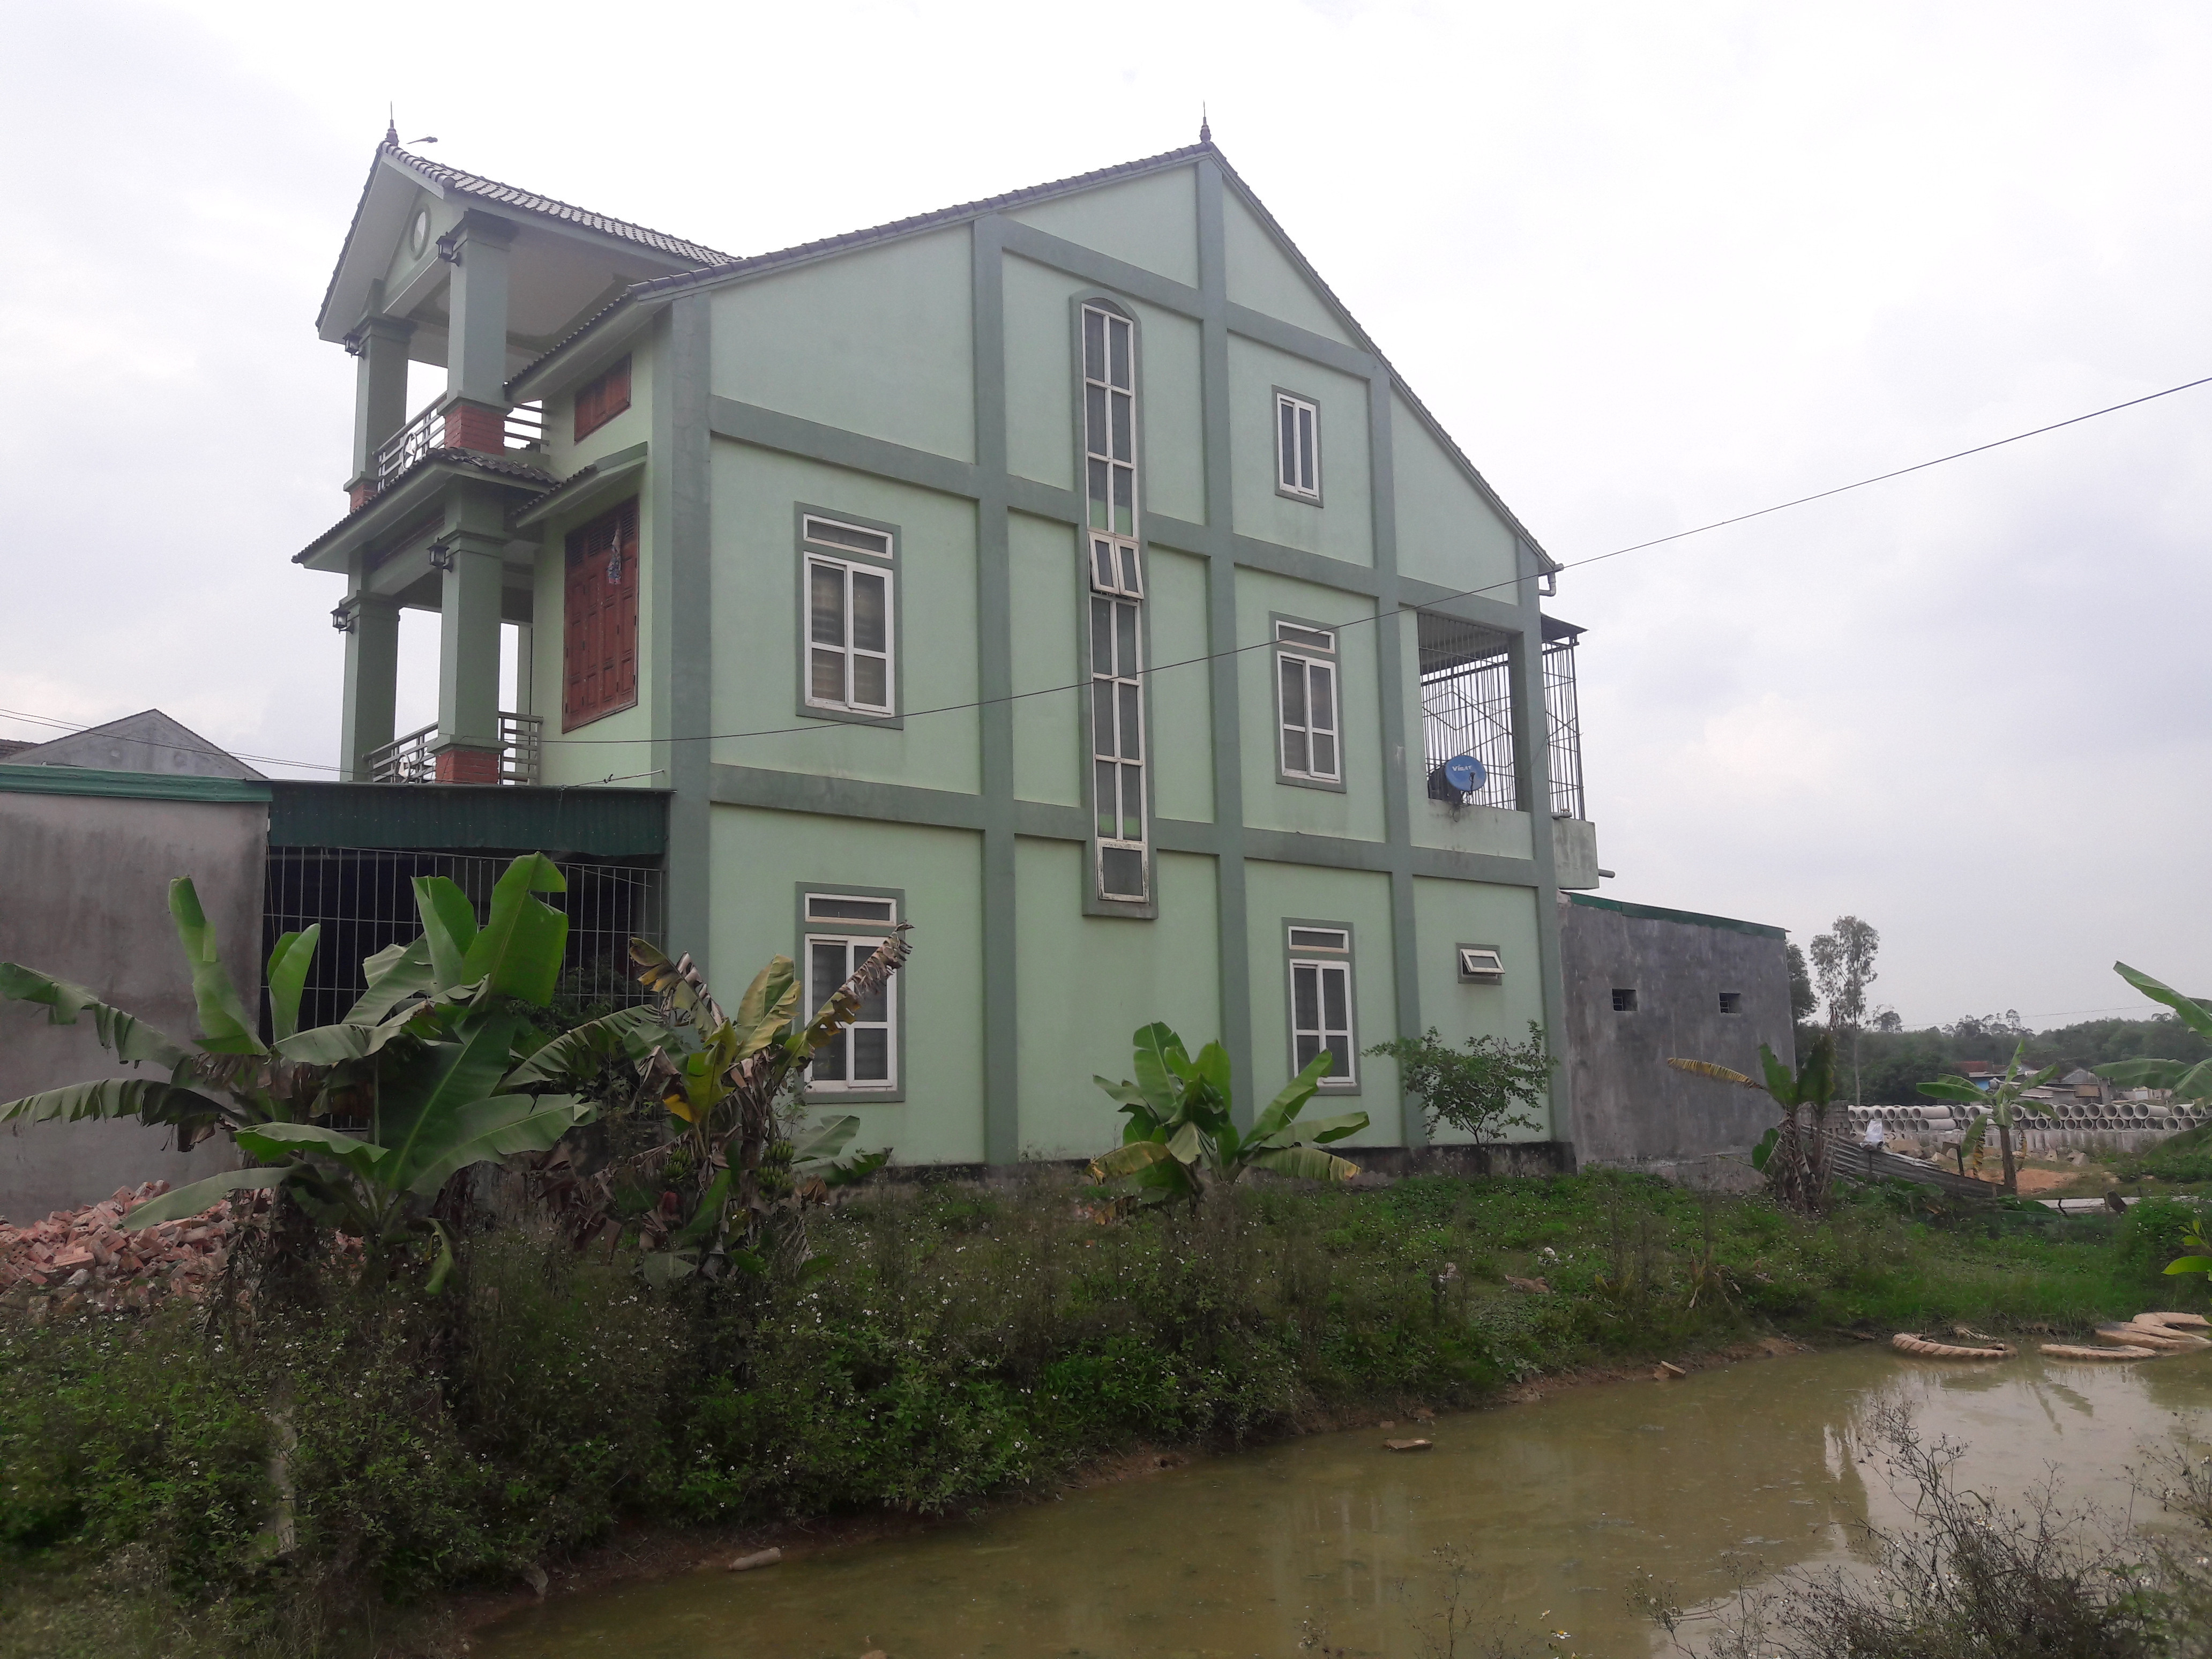 Phần đất mà xã bán trái quy định cho gia đình chị Huế hiện đã được chị này xây căn nhà 3 tầng kiên cố